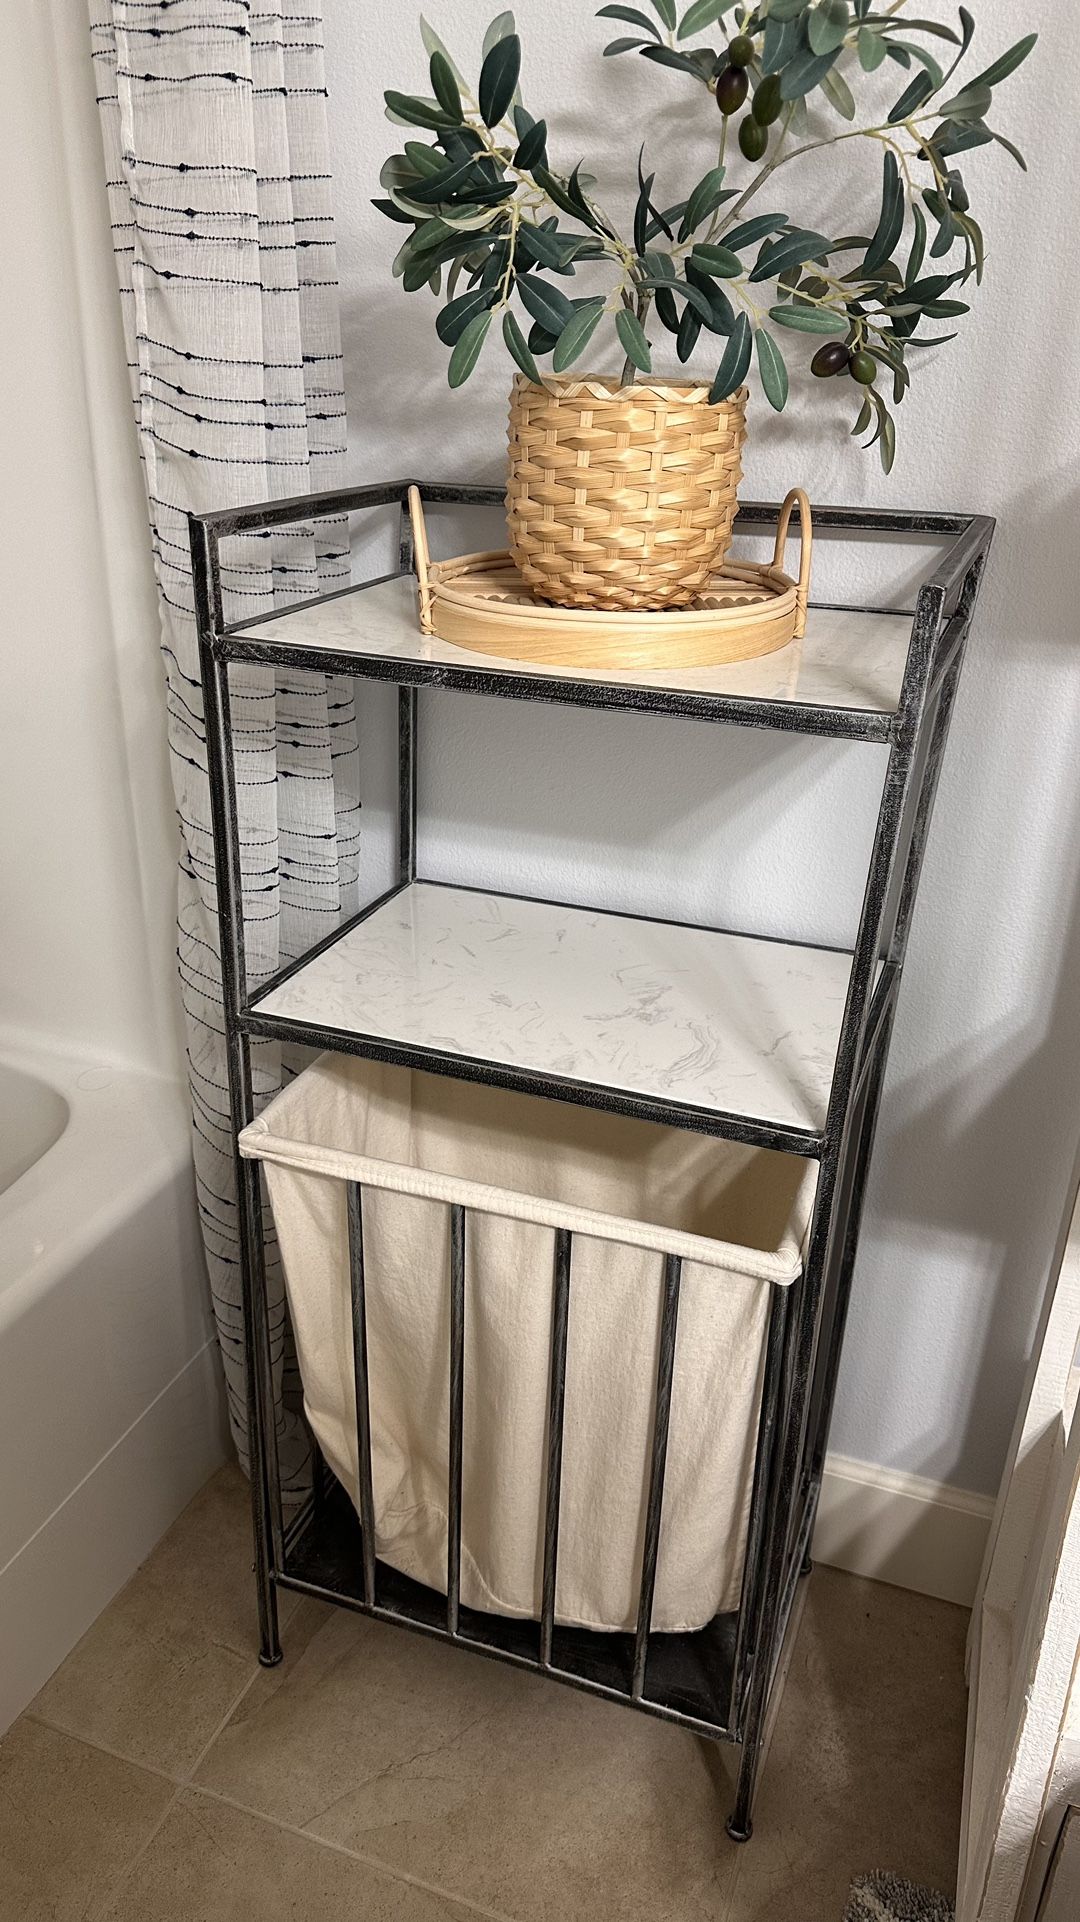 Decorative Shelf With Laundry Basket 